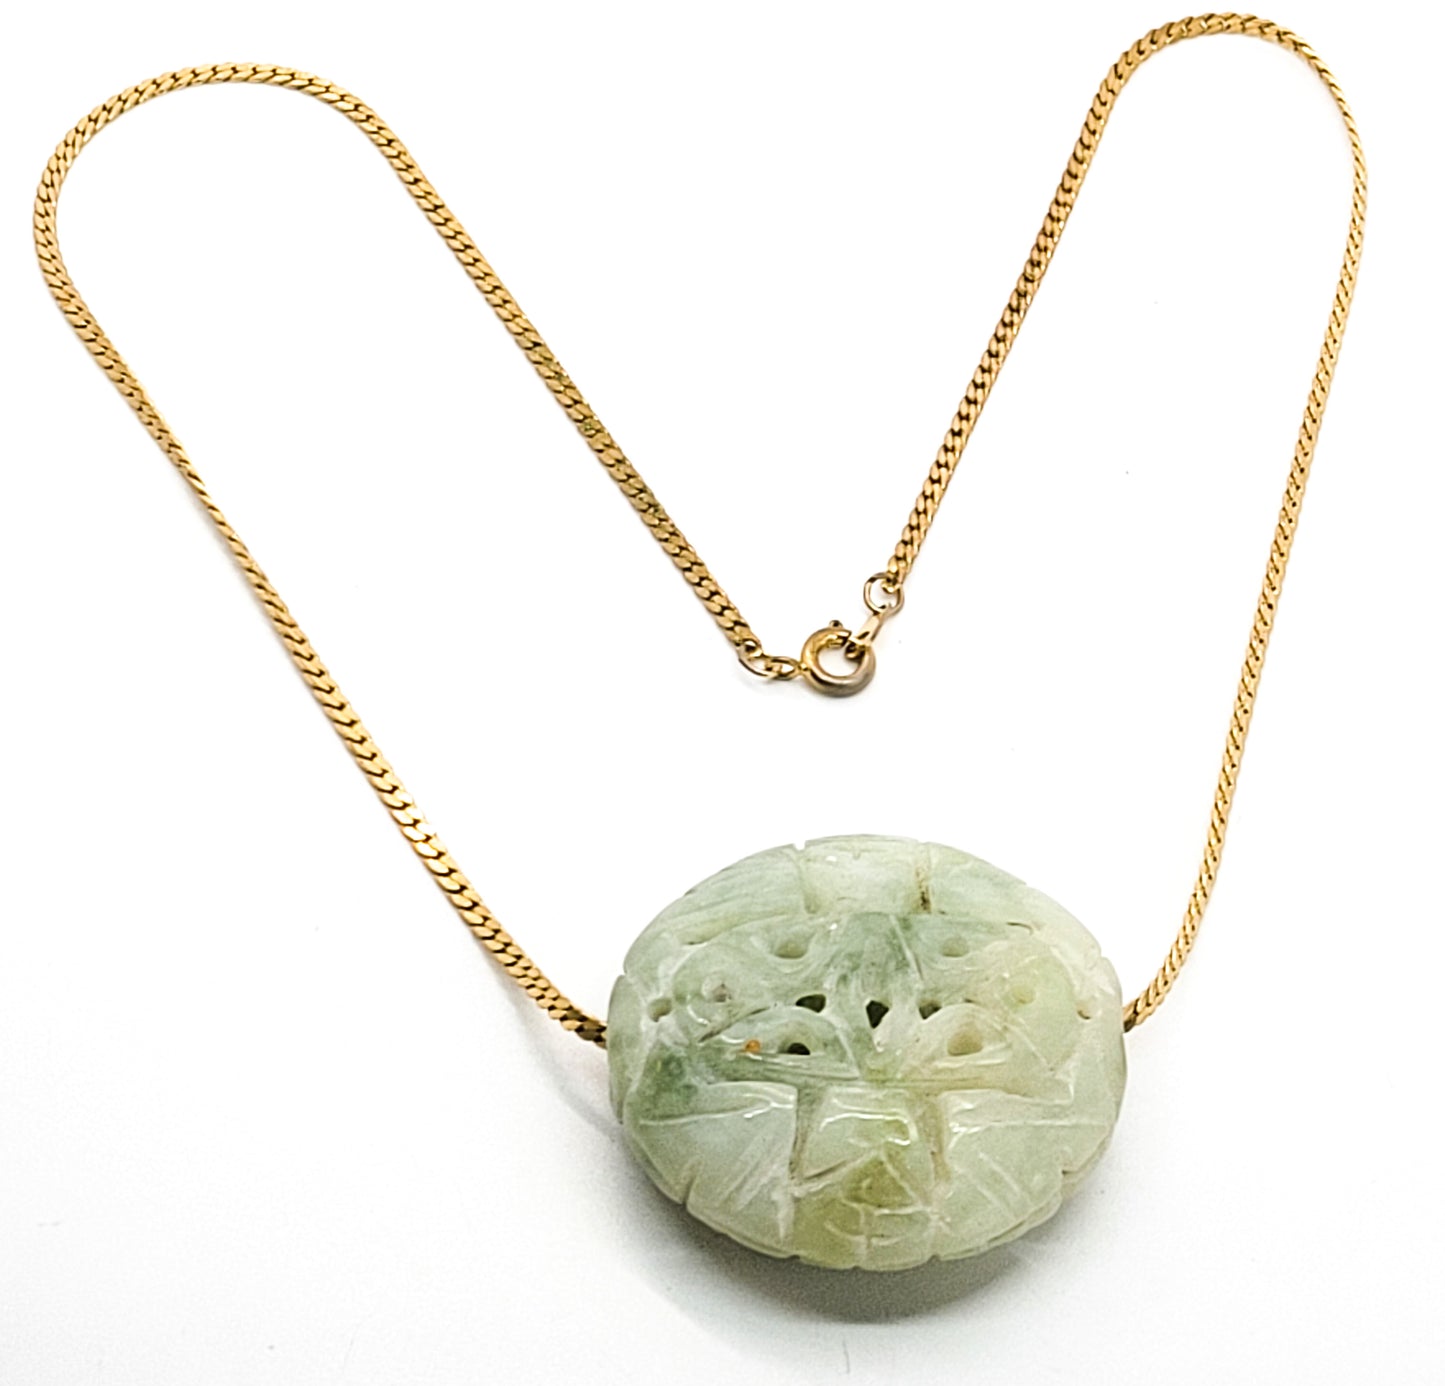 Light green Carved Nephrite Jade vintage slider pendant on gold toned necklace